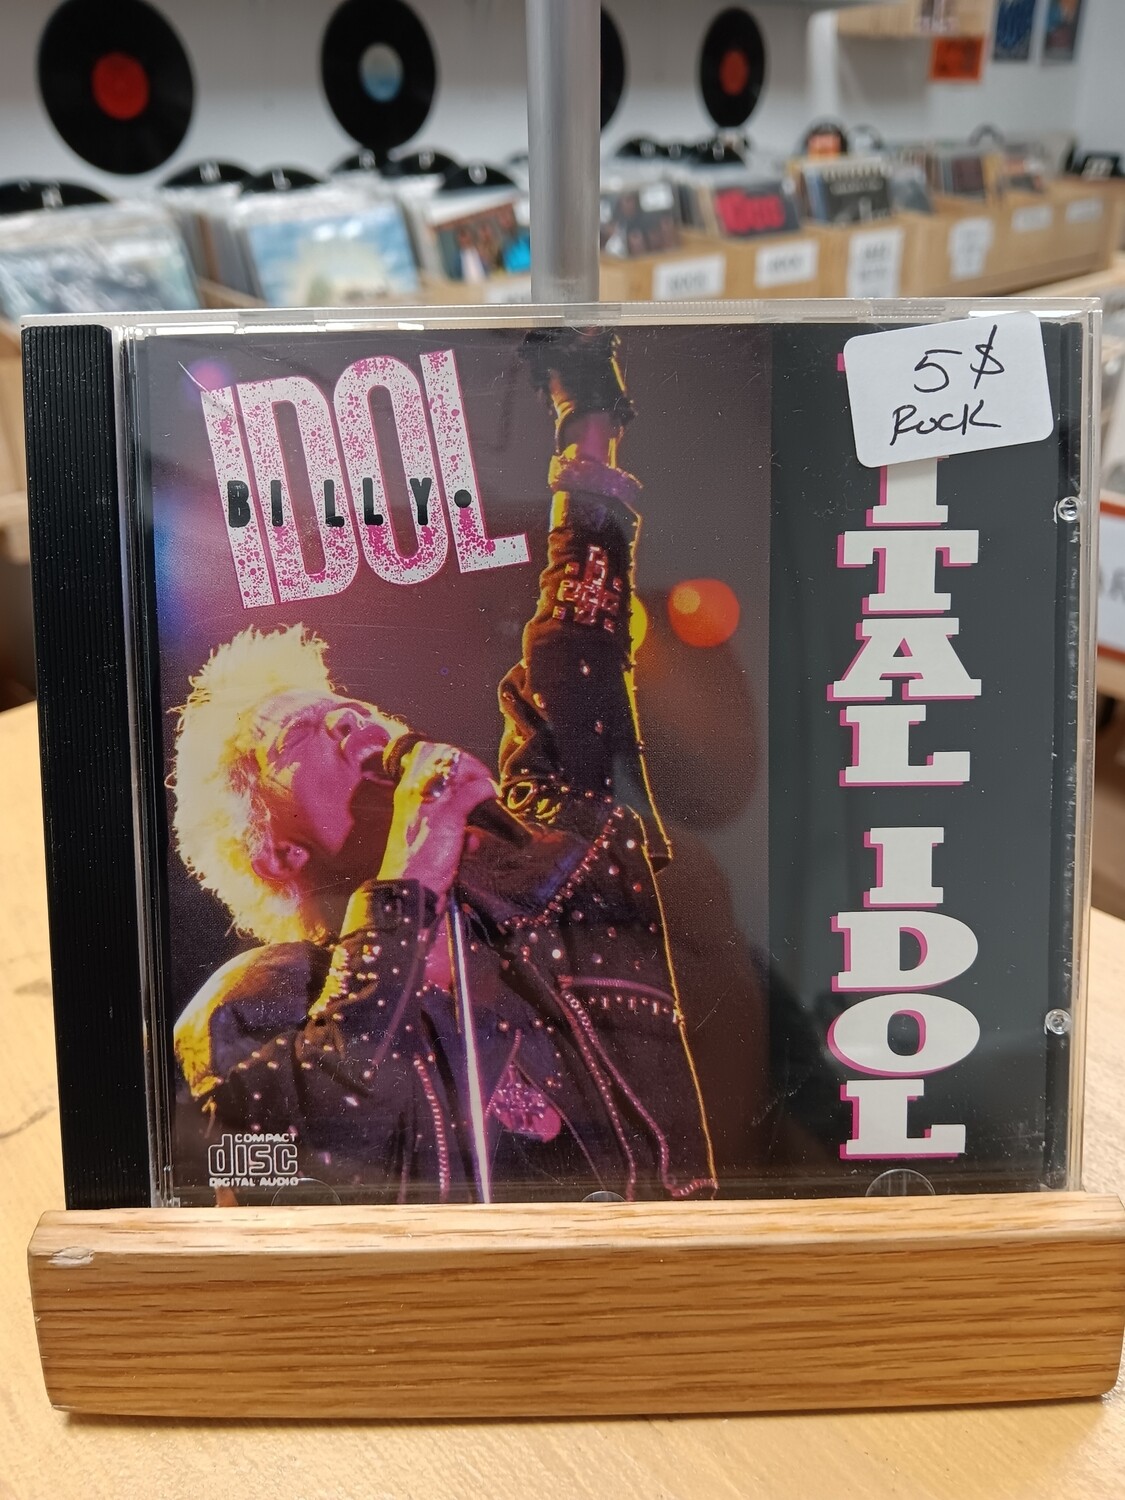 Billy Idol - Vital Idol (CD)